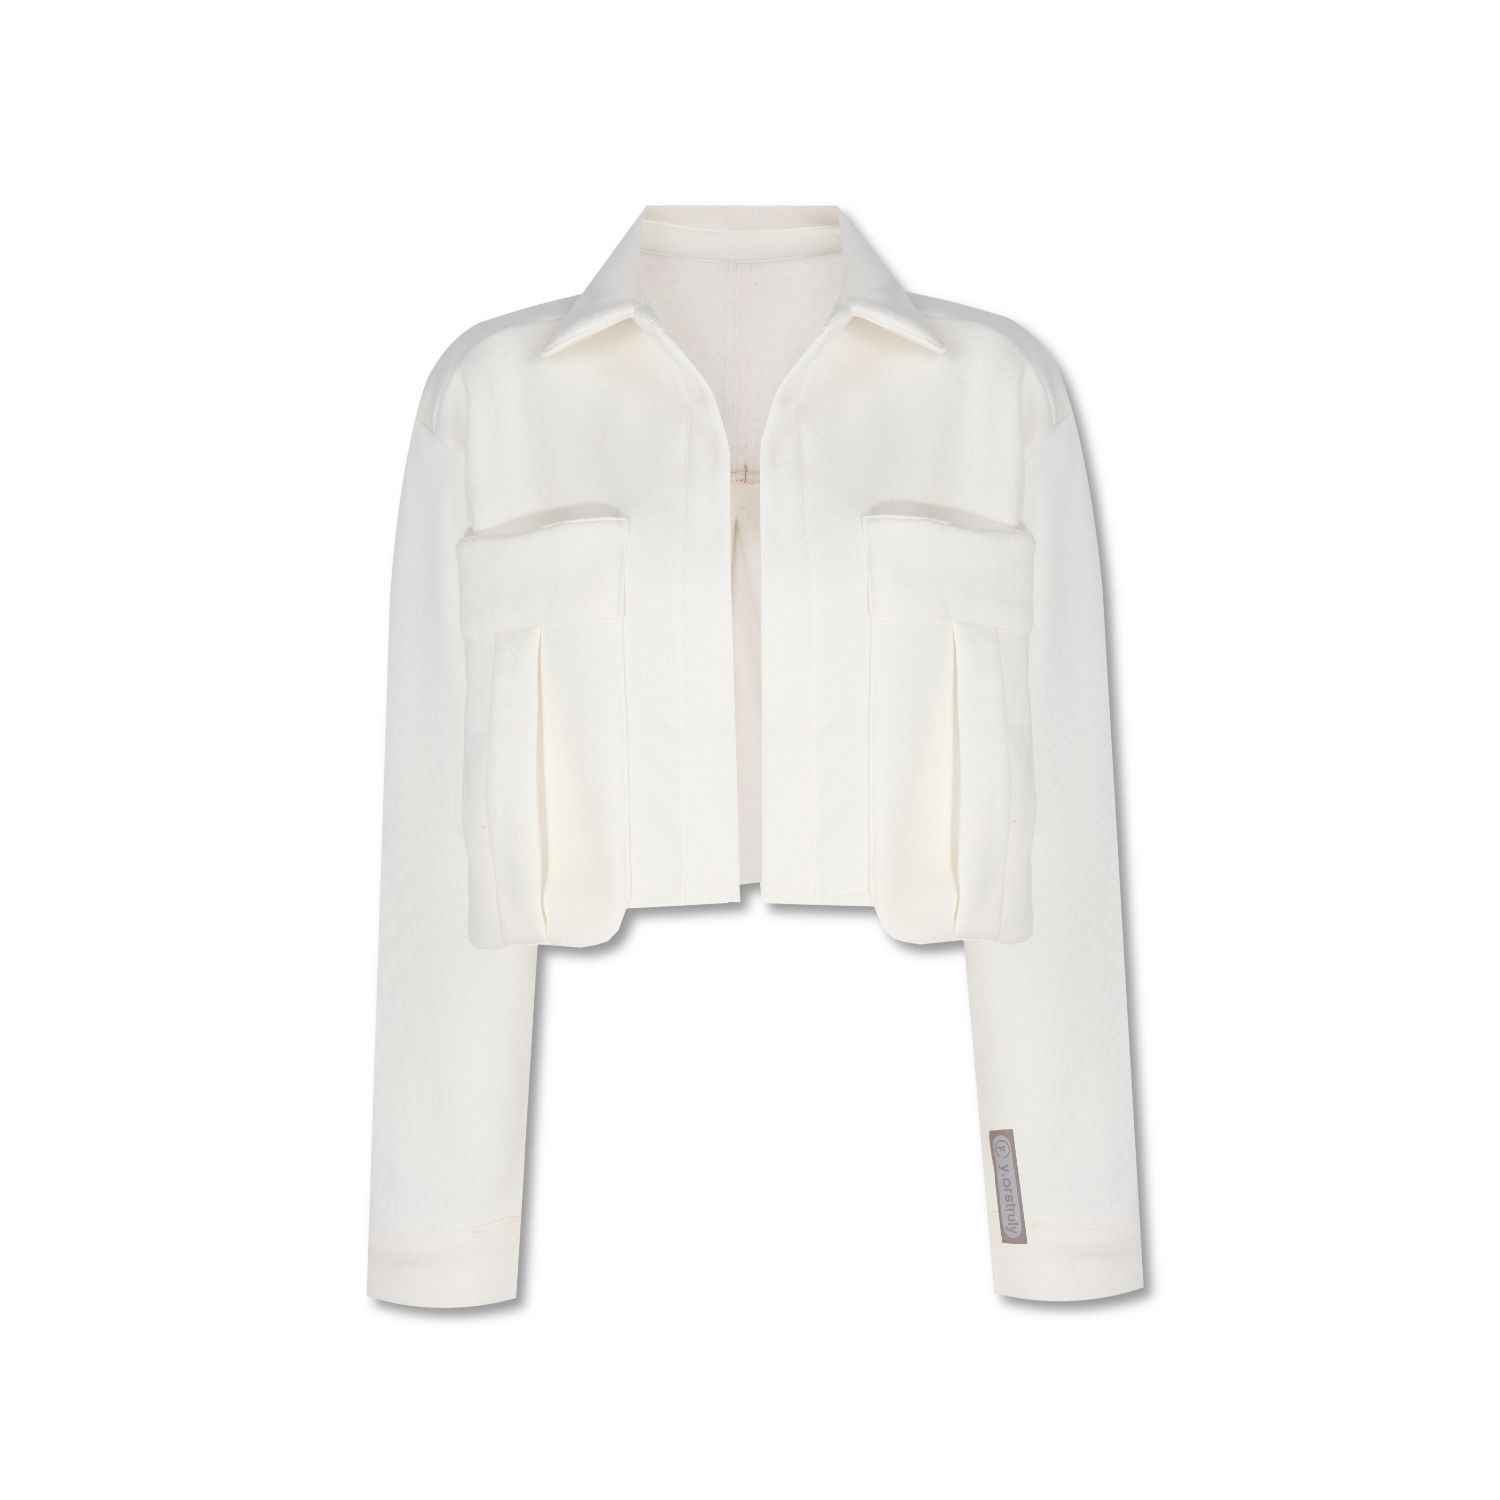 Yorstruly Women's White Cropped Jacket- Vanilla